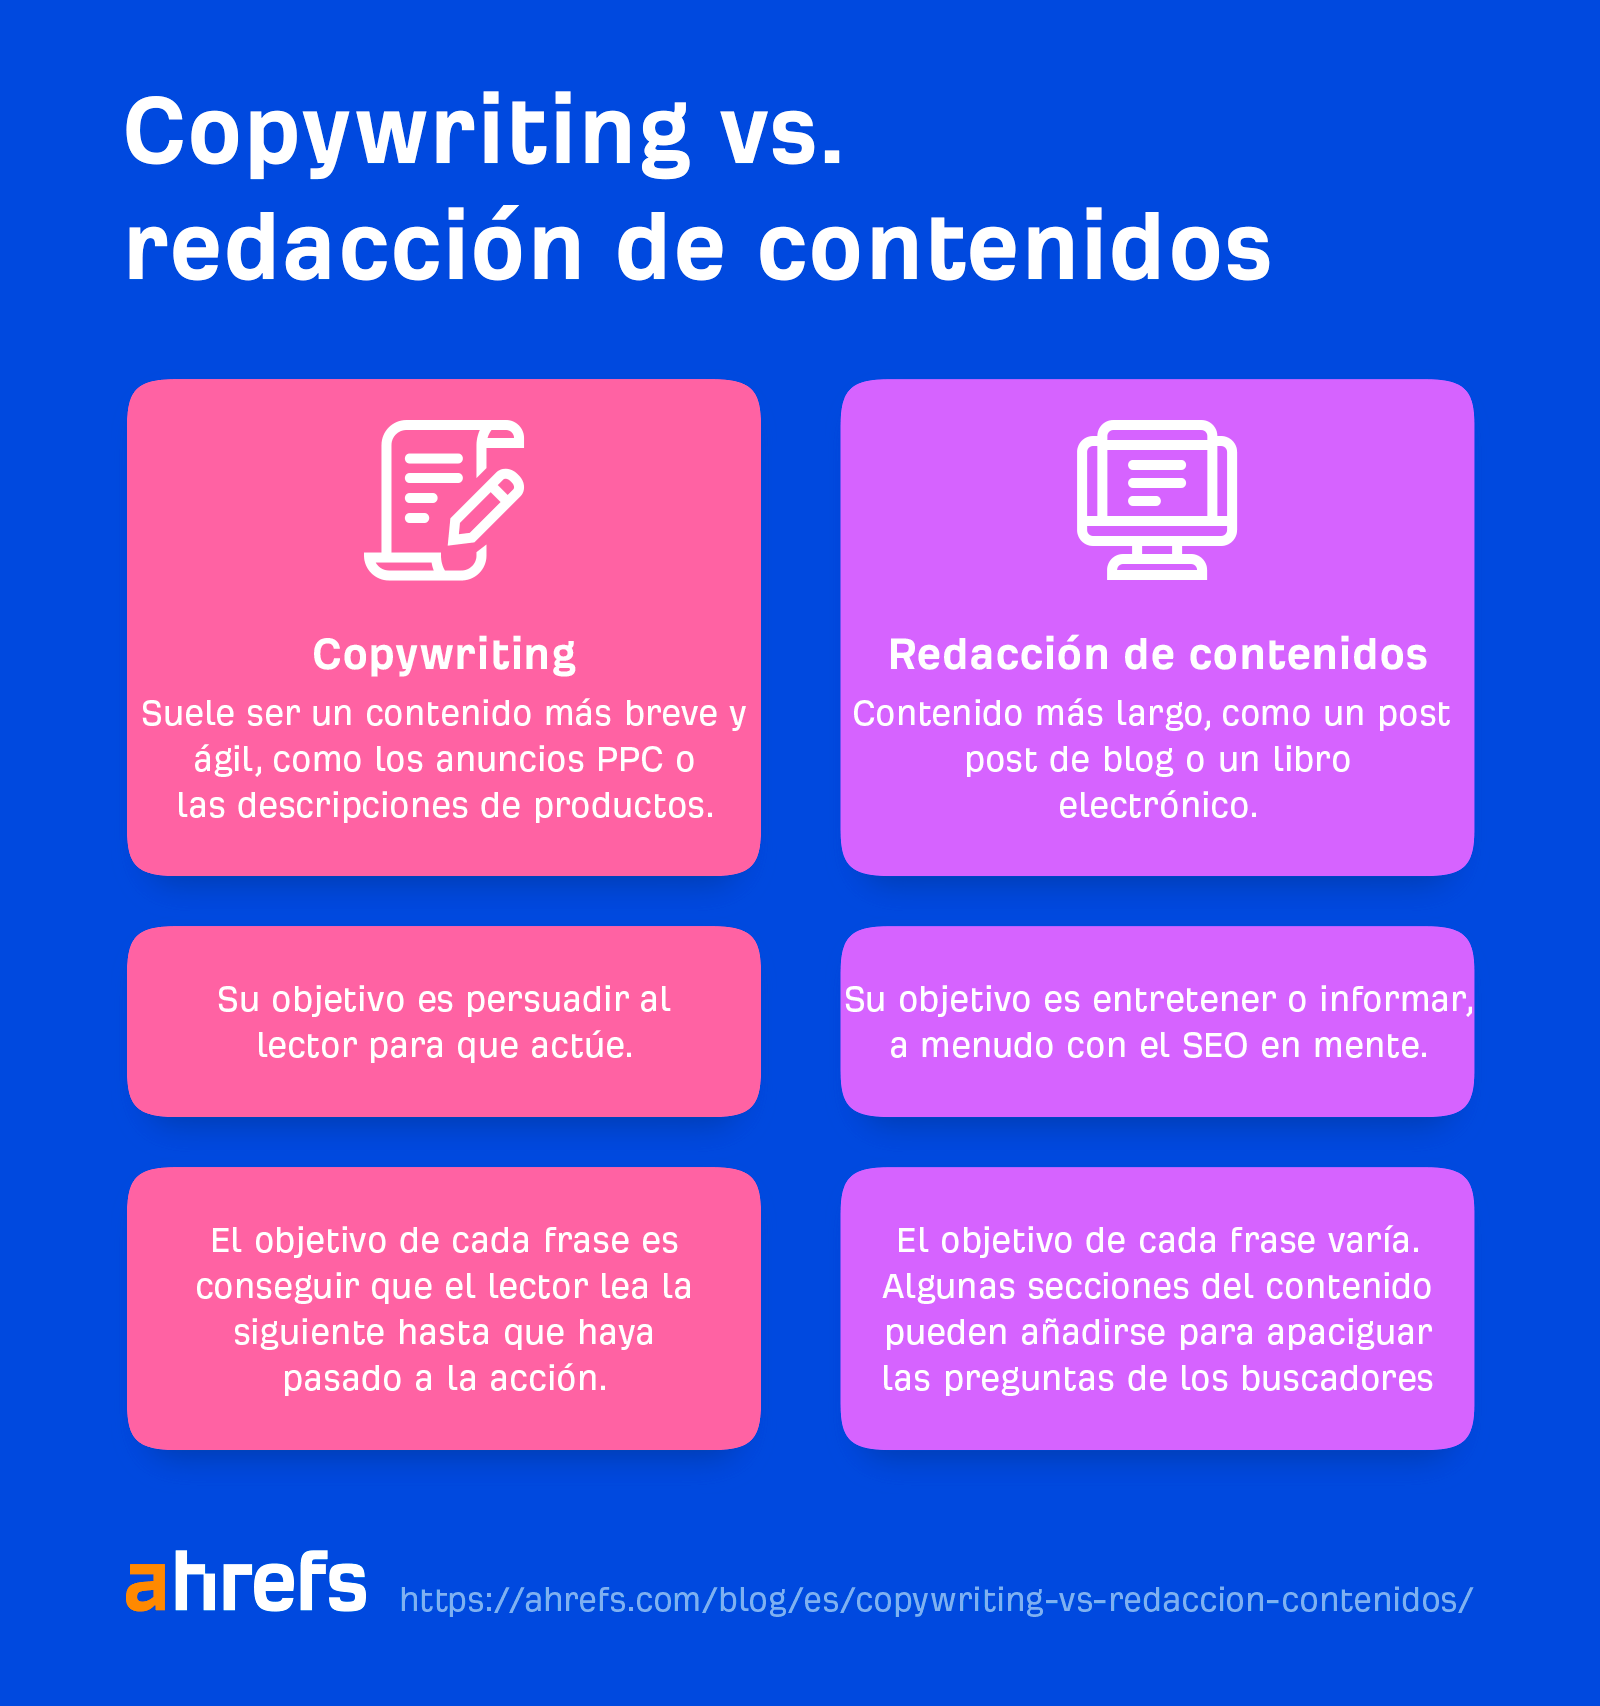 Copywriting vs. redacción de contenidos.